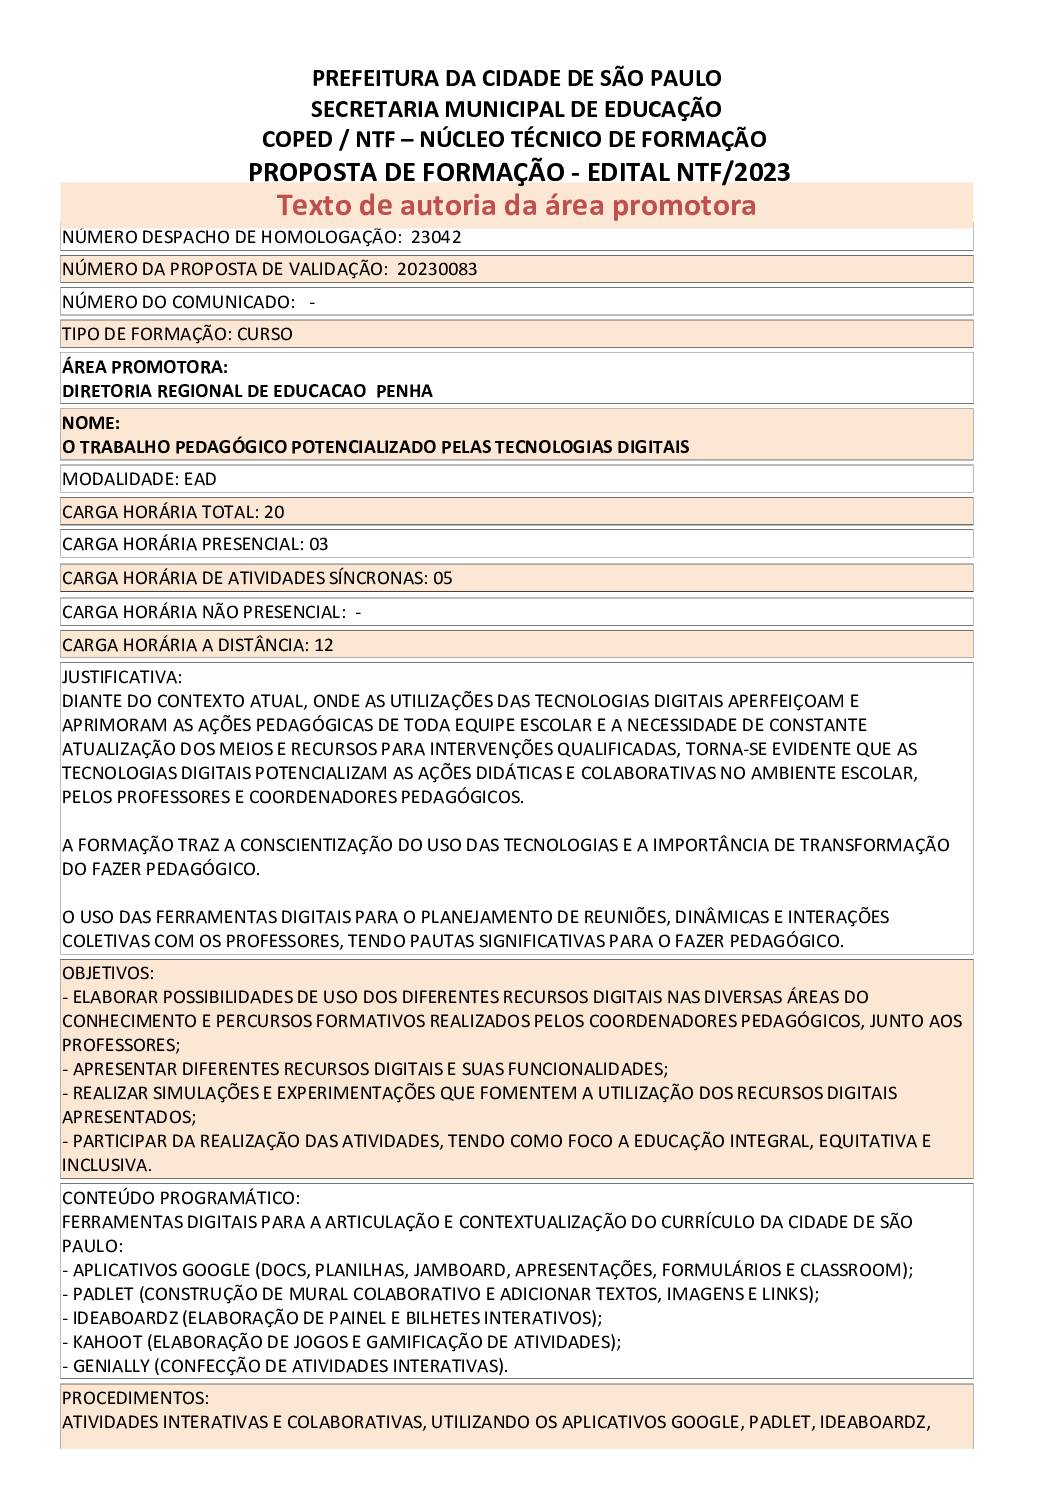 PDF com informações sobre o curso: O TRABALHO PEDAGÓGICO POTENCIALIZADO PELAS TECNOLOGIAS DIGITAIS 